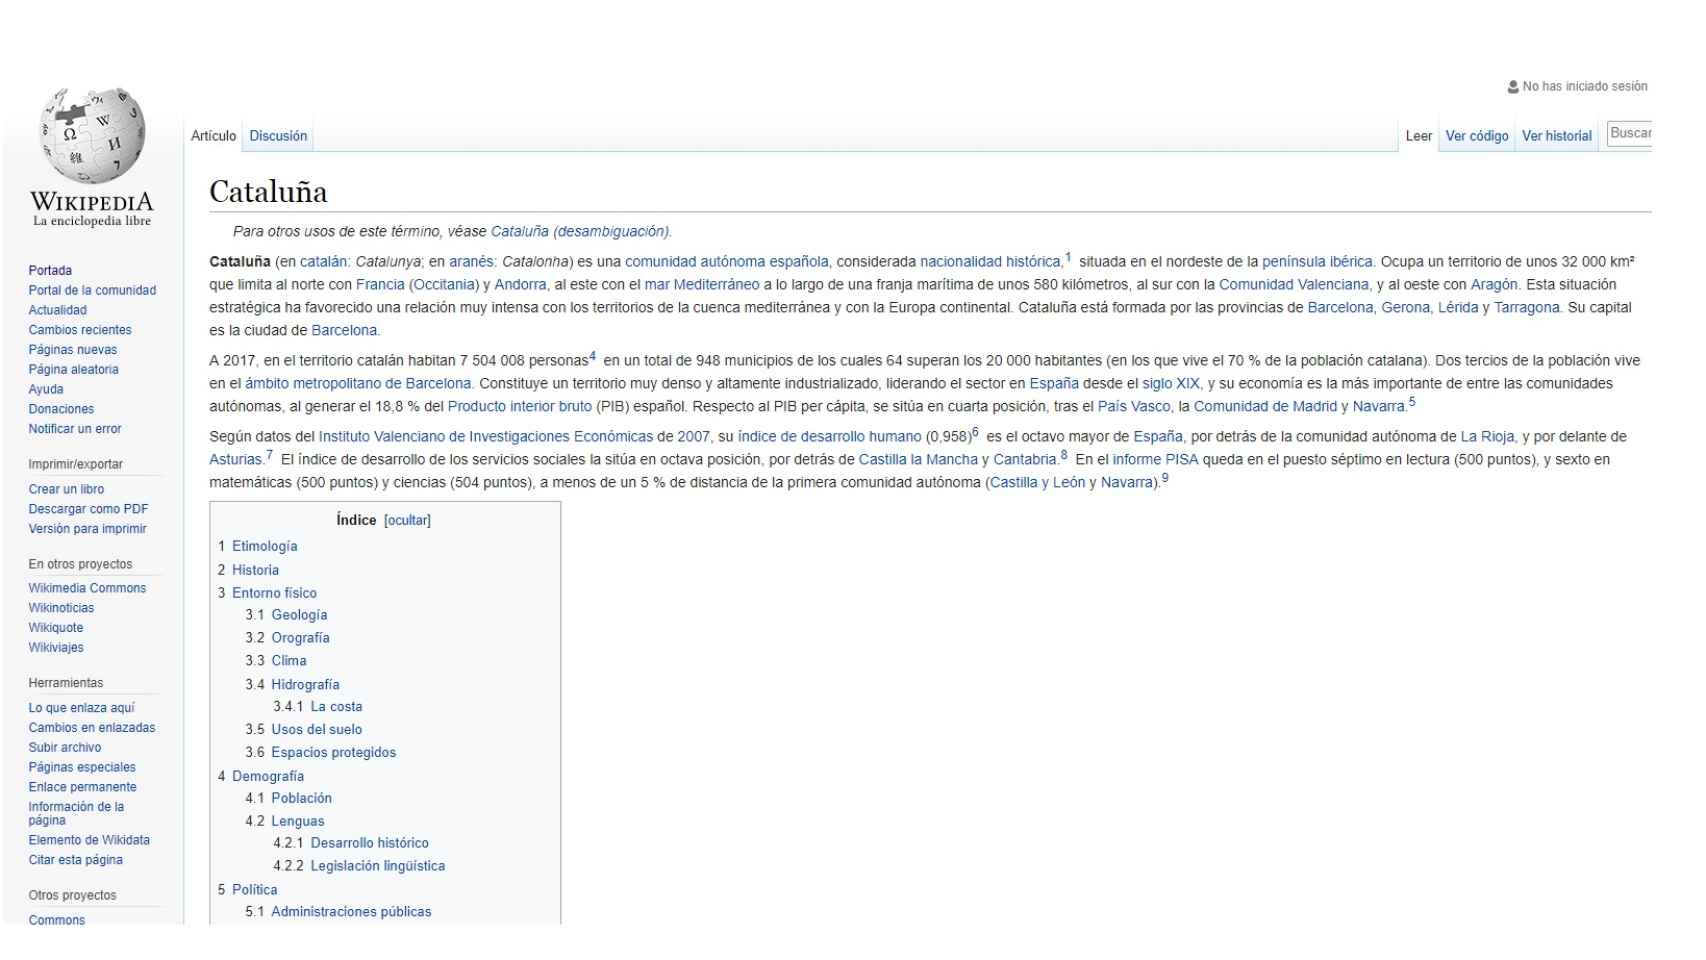 Artículo de Wikipedia sobre Cataluña.